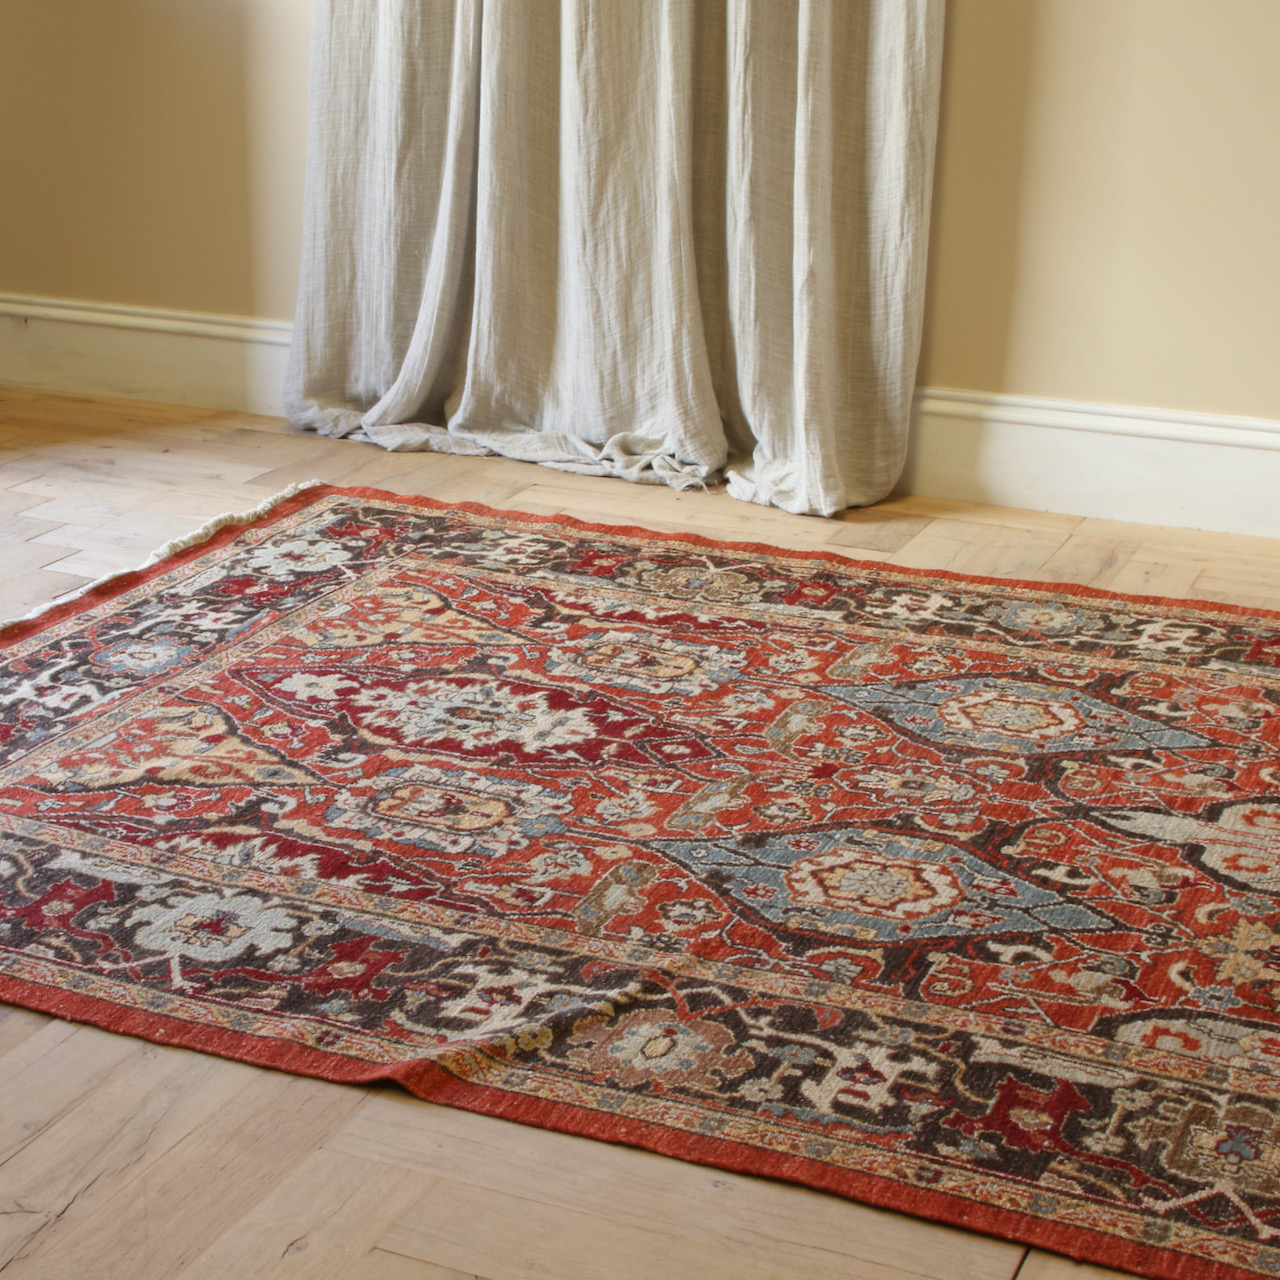 133-8 - Turkish Carpet